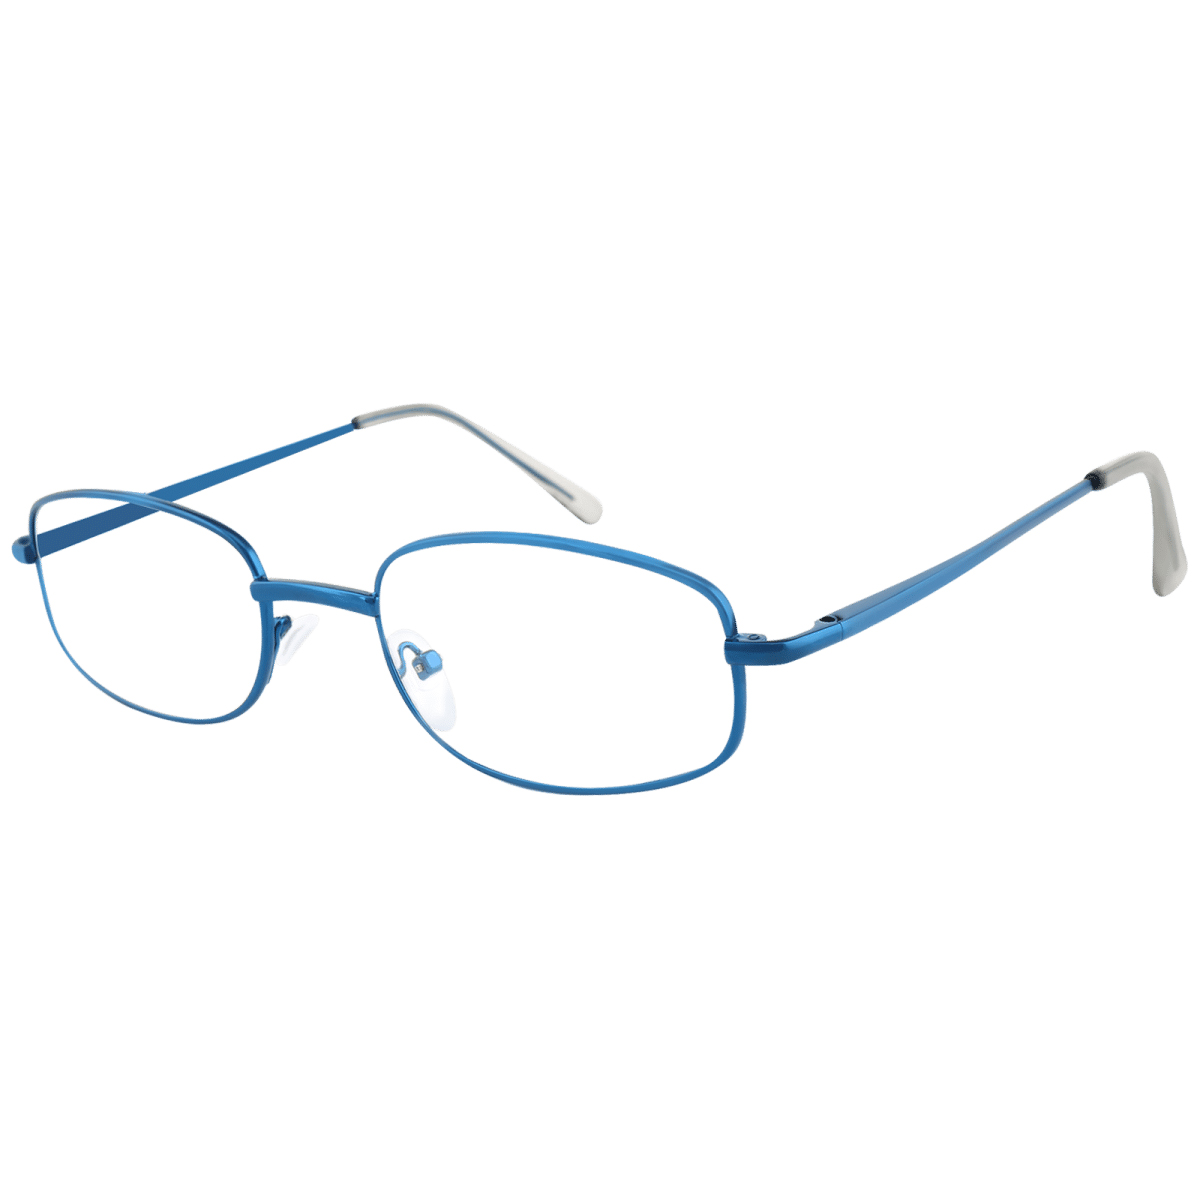 Callpidae - Oval Blue Reading Glasses for Men & Women